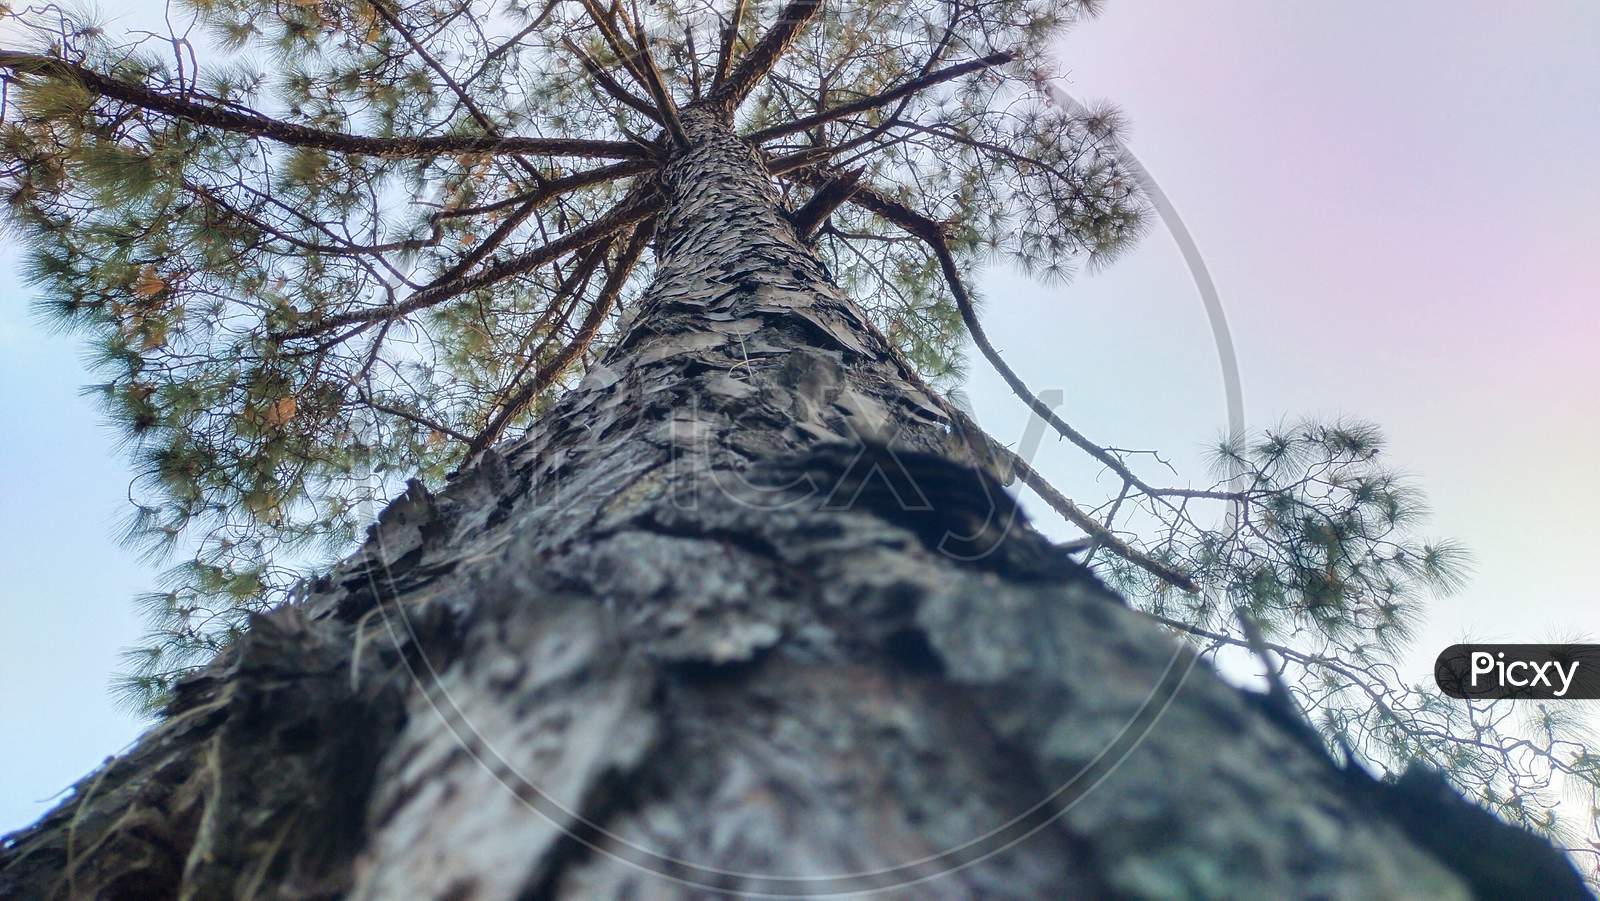 A long pine tree